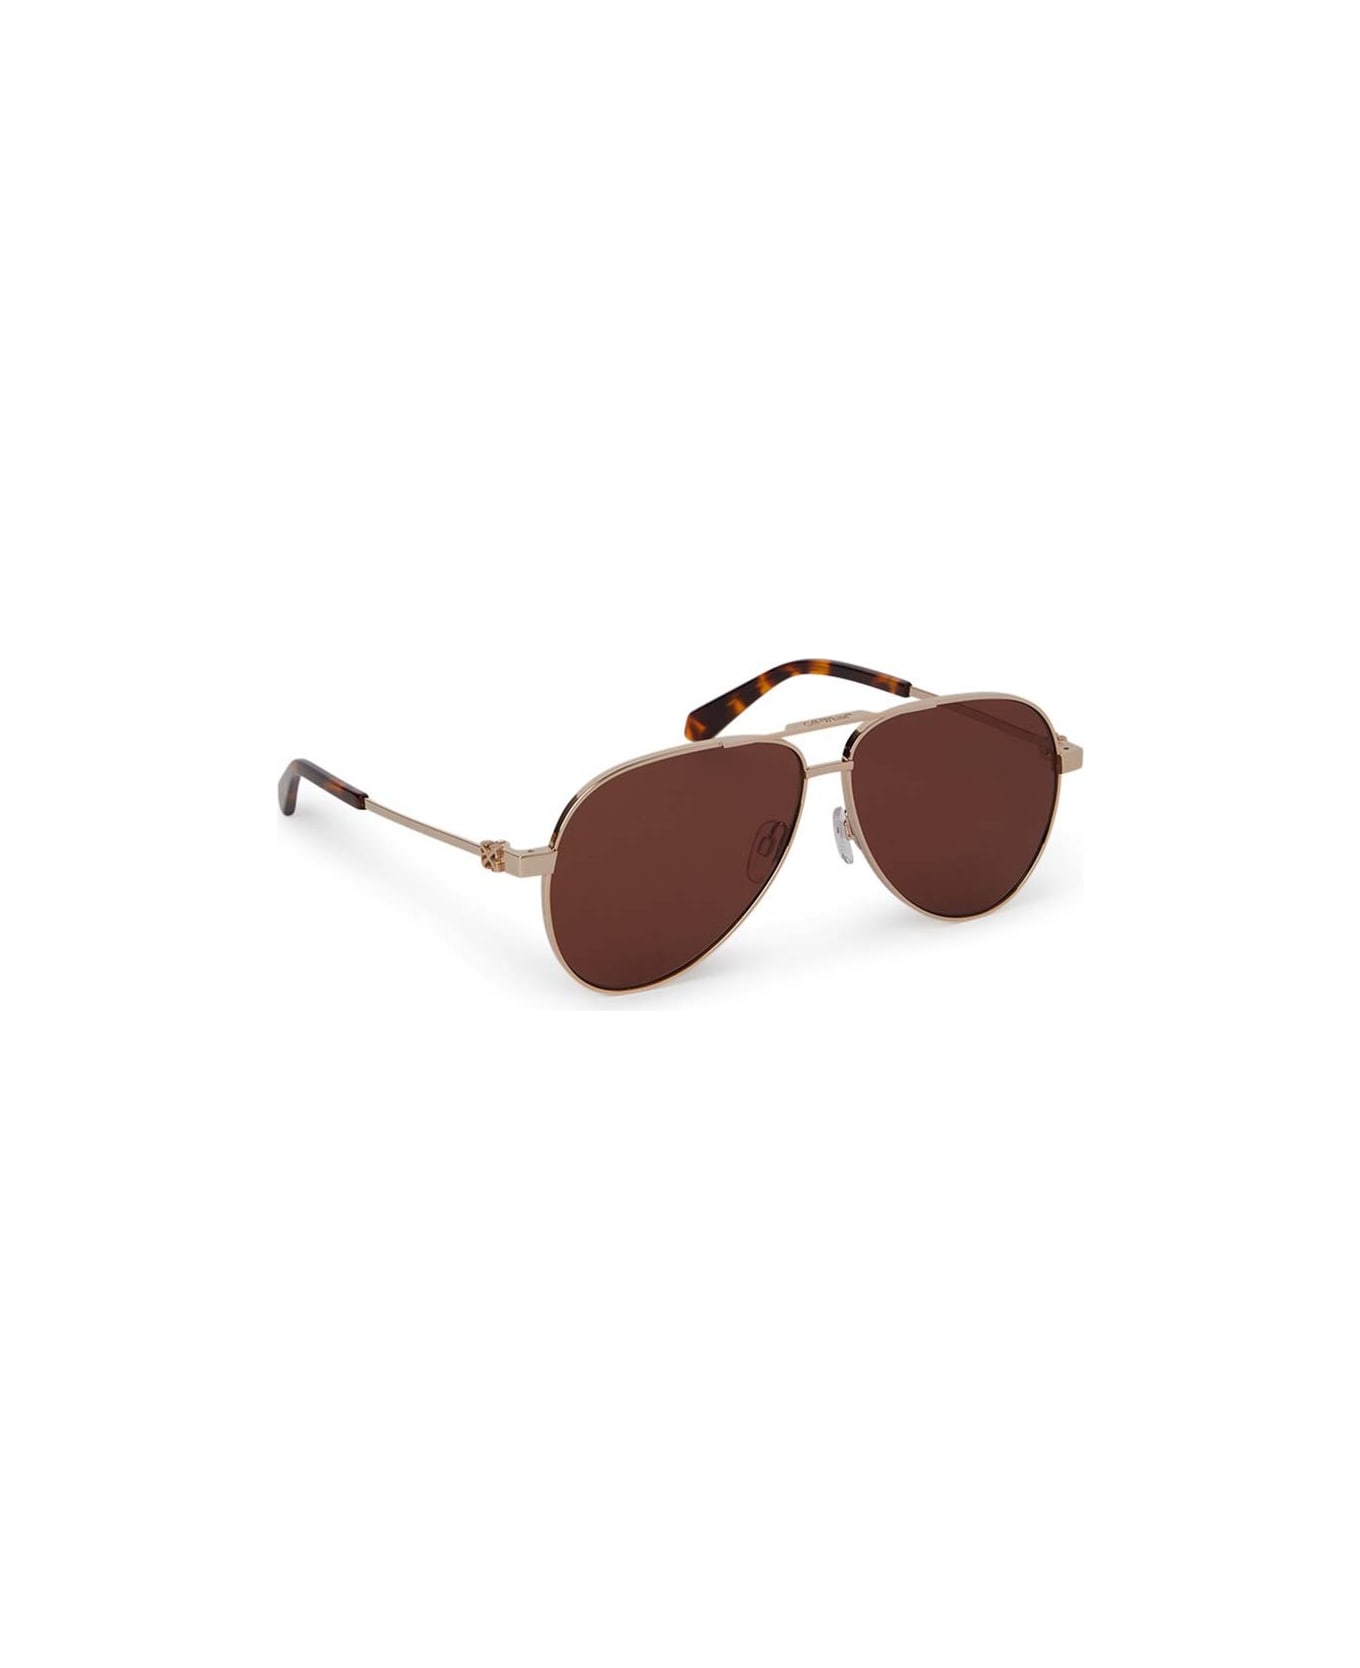 Off-White Sunglasses - Oro/Bronzo specchiato サングラス